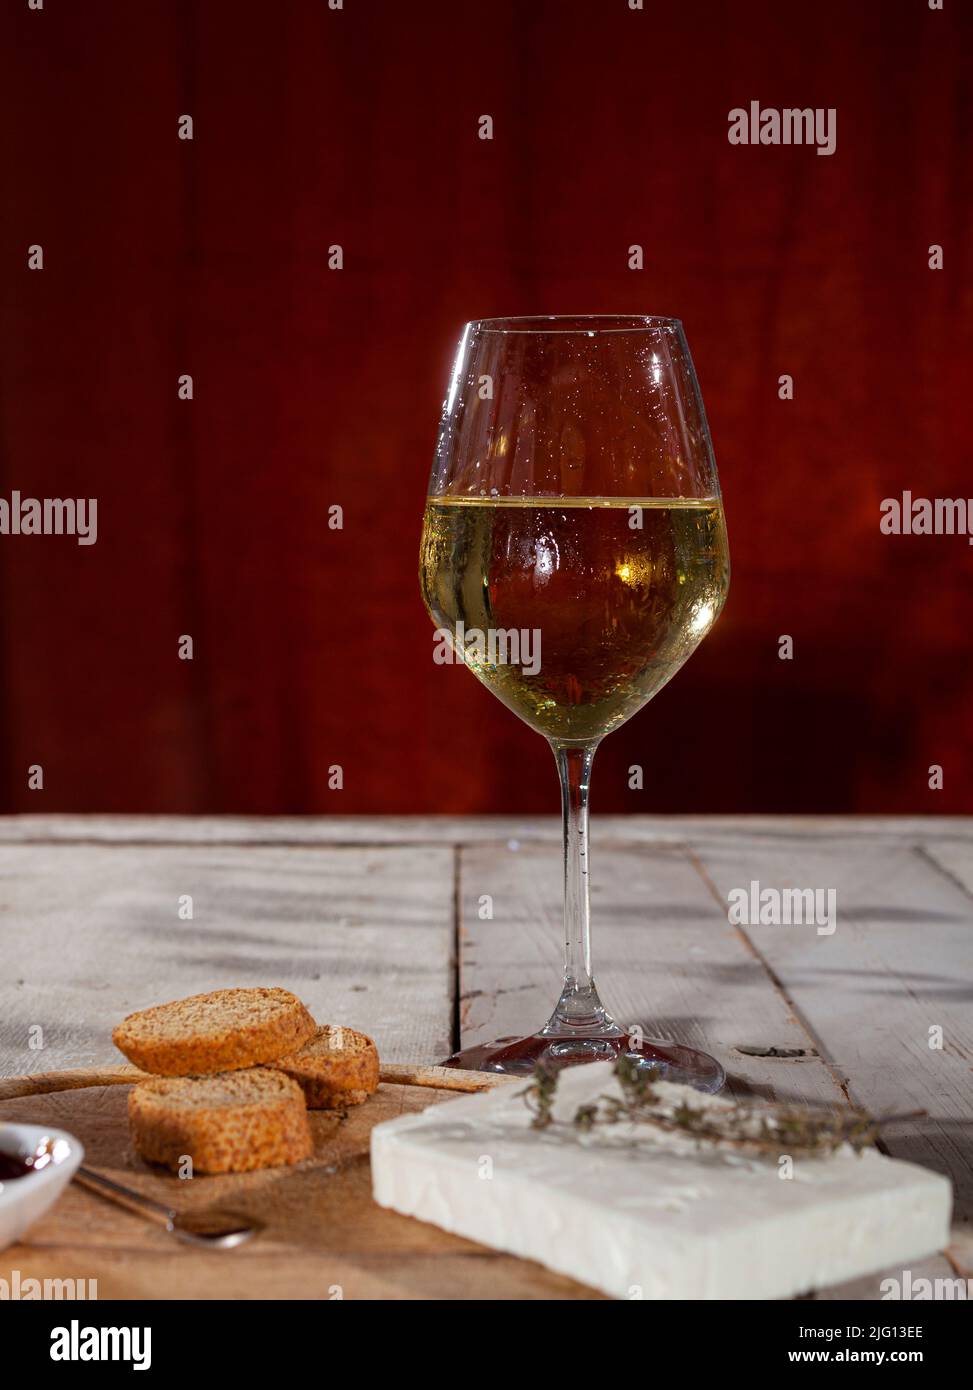 Delicioso aperitivo con tabla de queso servido con vino blanco fresco Foto de stock